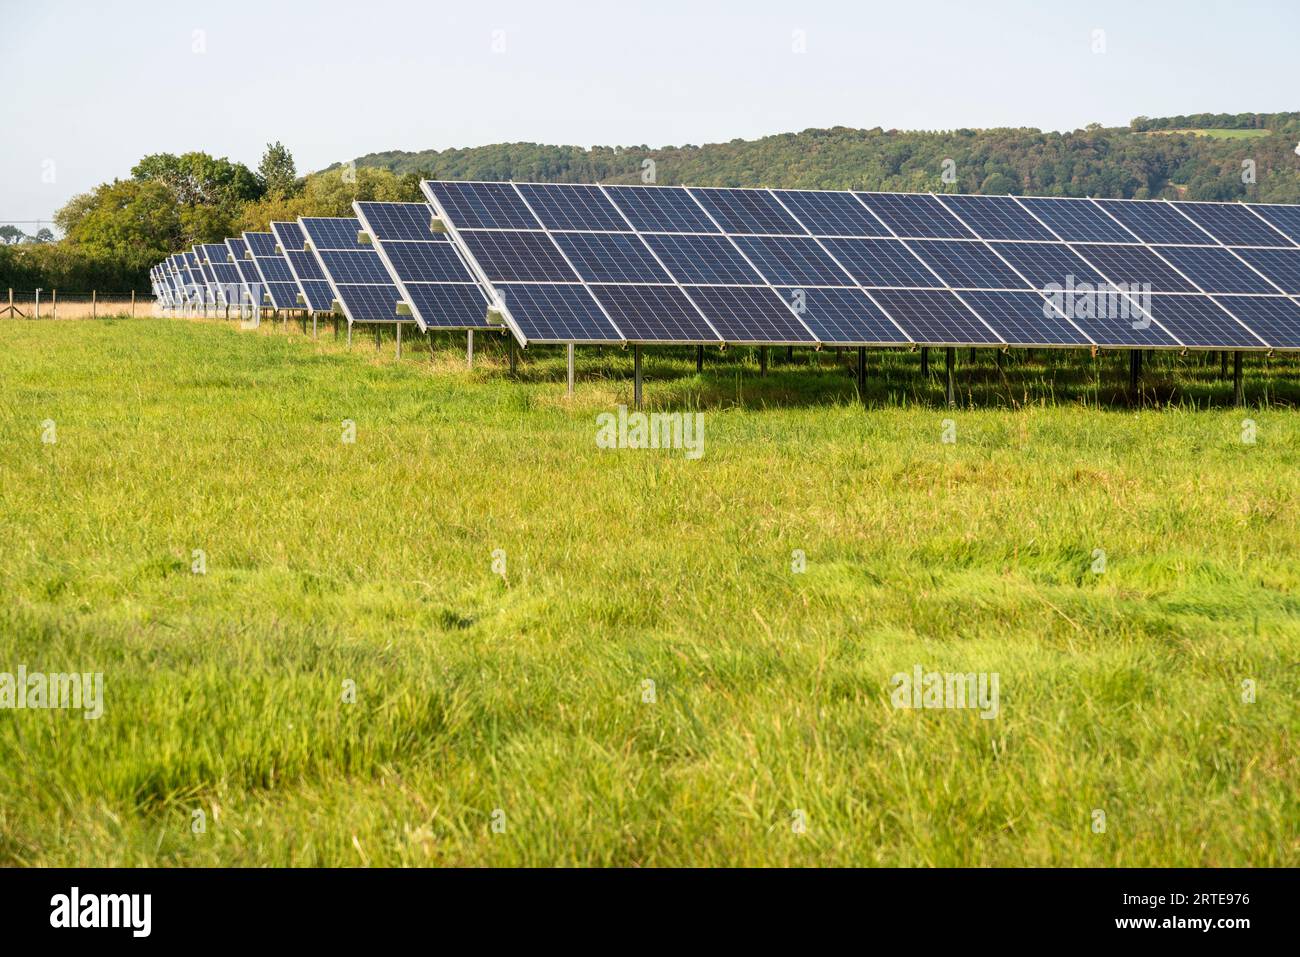 Produzione di energia solare, in un sito in campagna, durante l'estate nell'Inghilterra rurale, fornendo energia pulita e sostenibile alle aree locali e vil Foto Stock